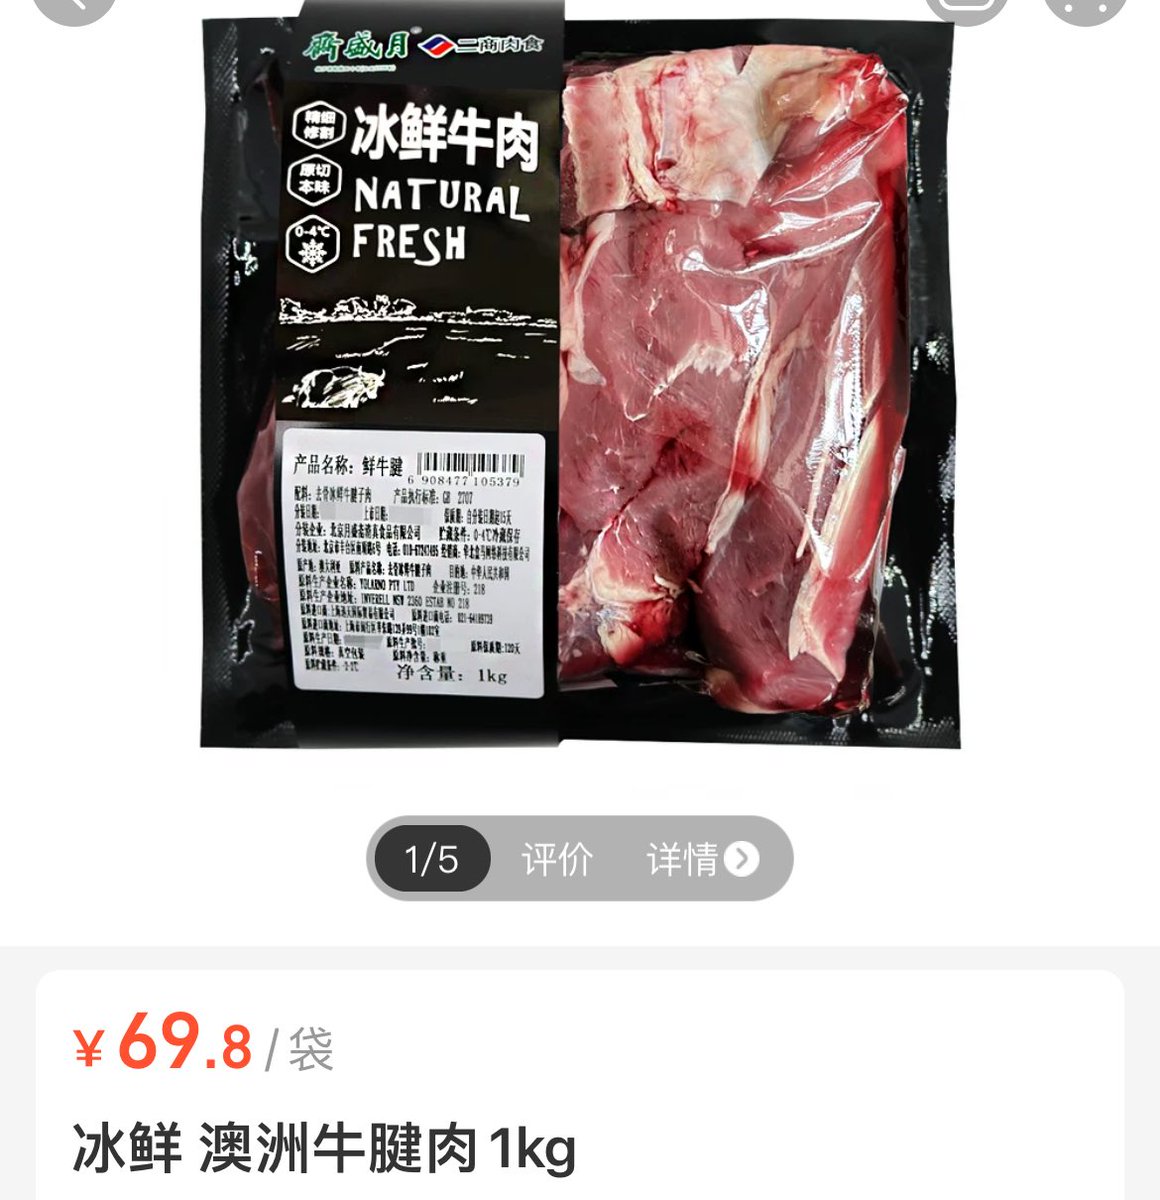 最近澳洲的牛肉，鲜牛腱1kg才69。 我已经连续吃了一个月了，每周炖两份吃🤭